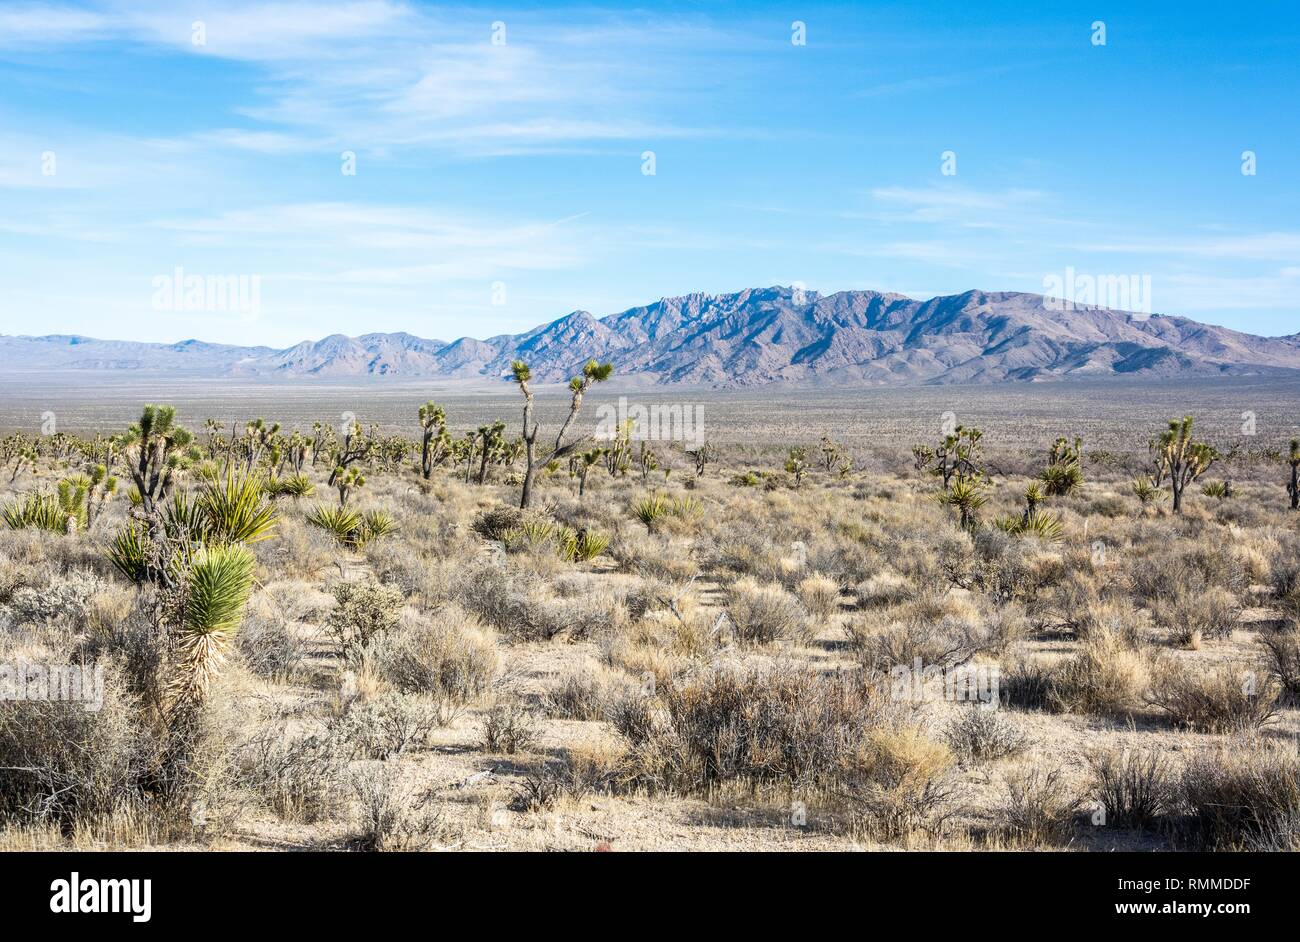 Landscape in Mojave Desert in California. Stock Photo